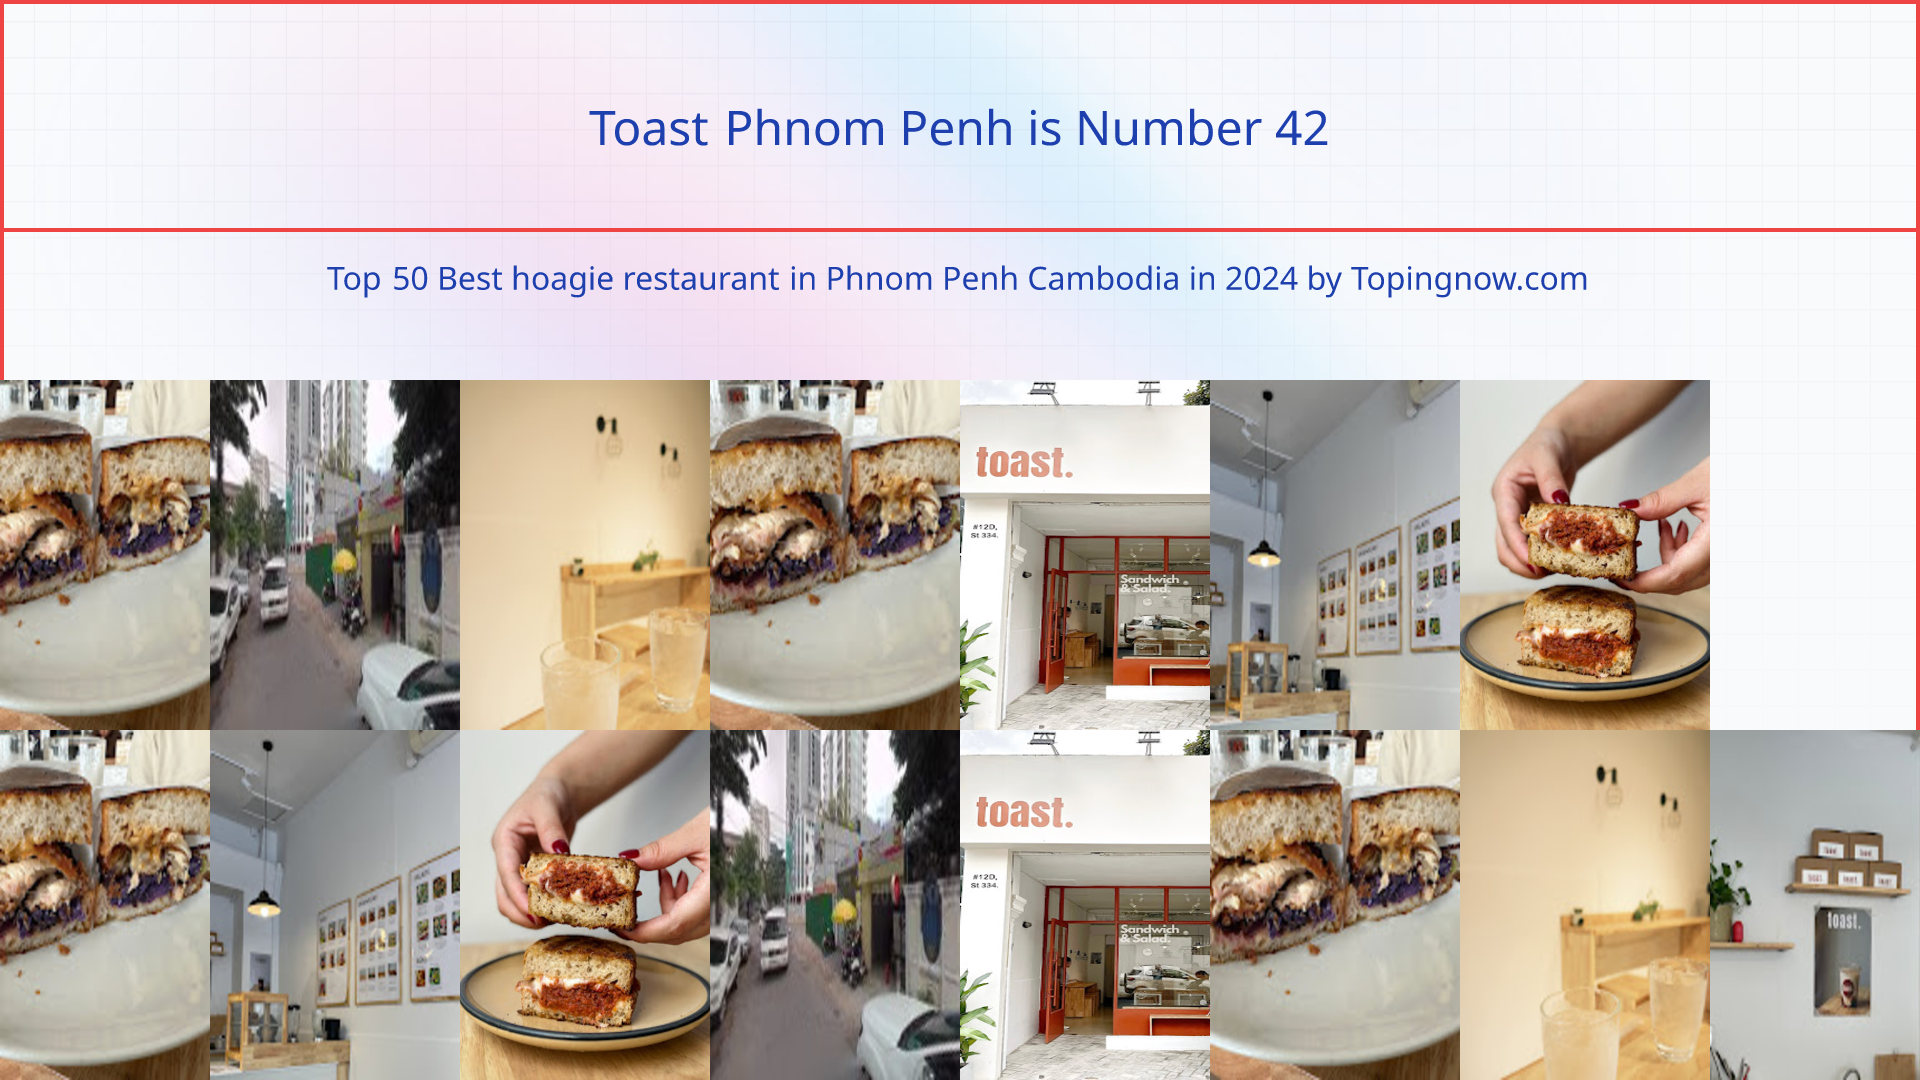 Toast Phnom Penh: Top 50 Best hoagie restaurant in Phnom Penh Cambodia in 2024